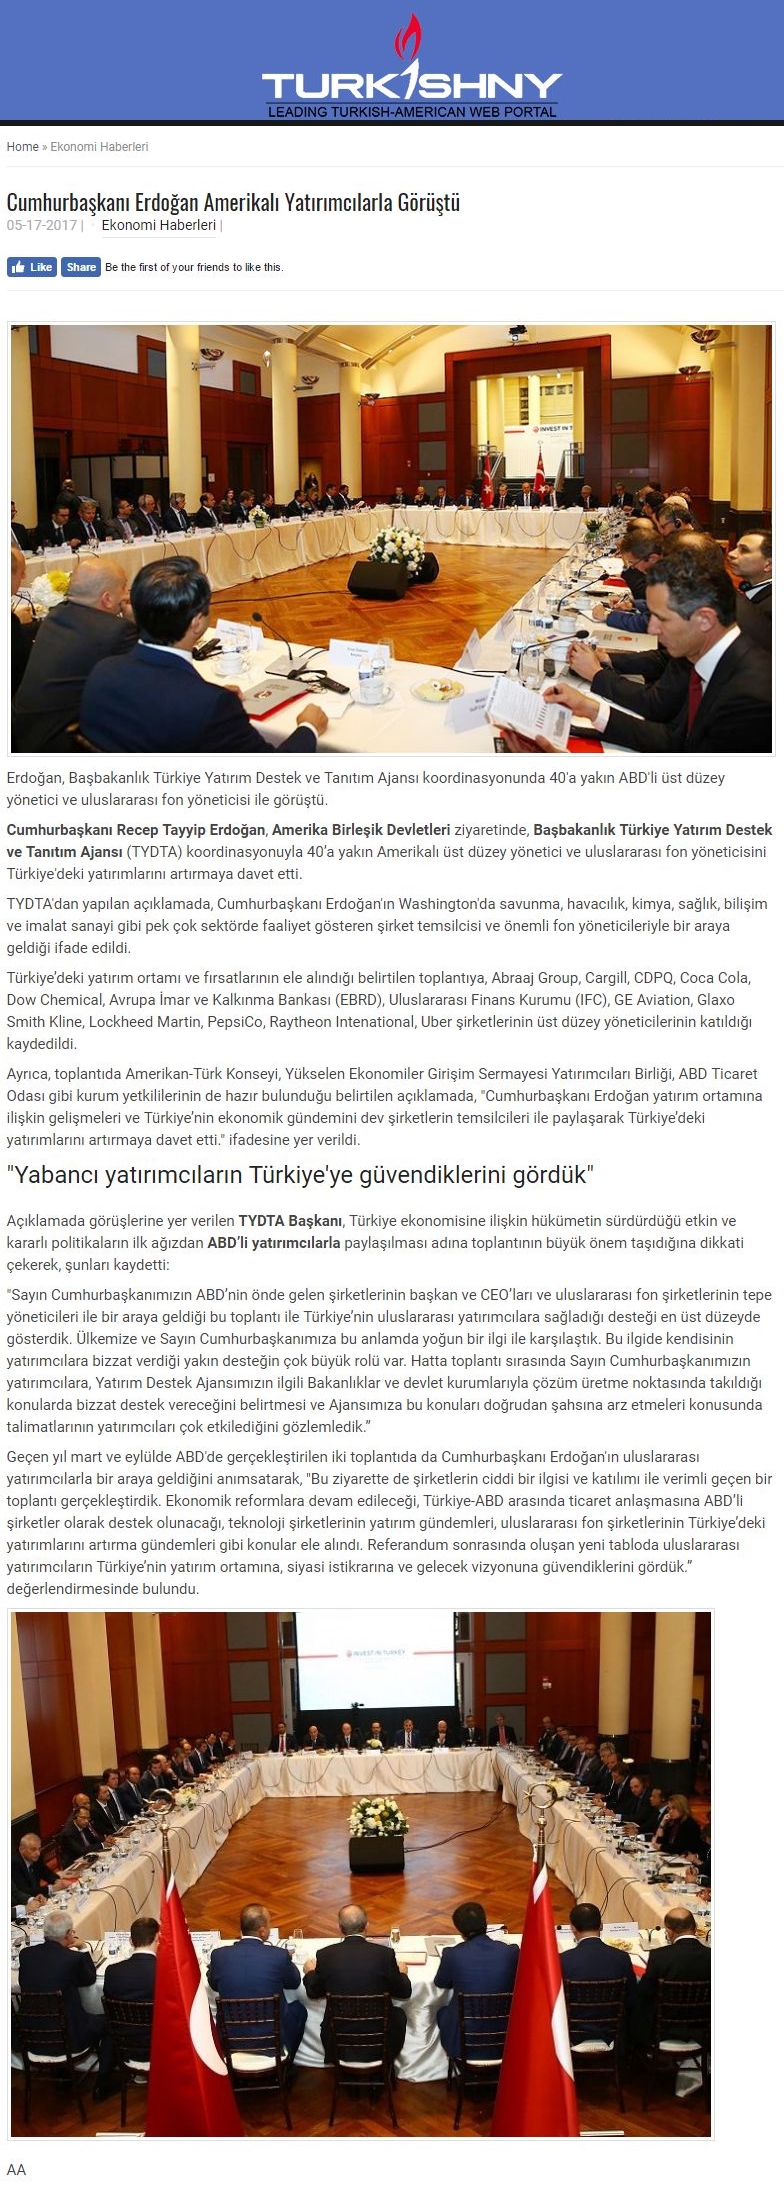 Cumhurbaşkanı Erdoğan Amerikalı Yatırımcılarla Görüştü | Turkishny.com